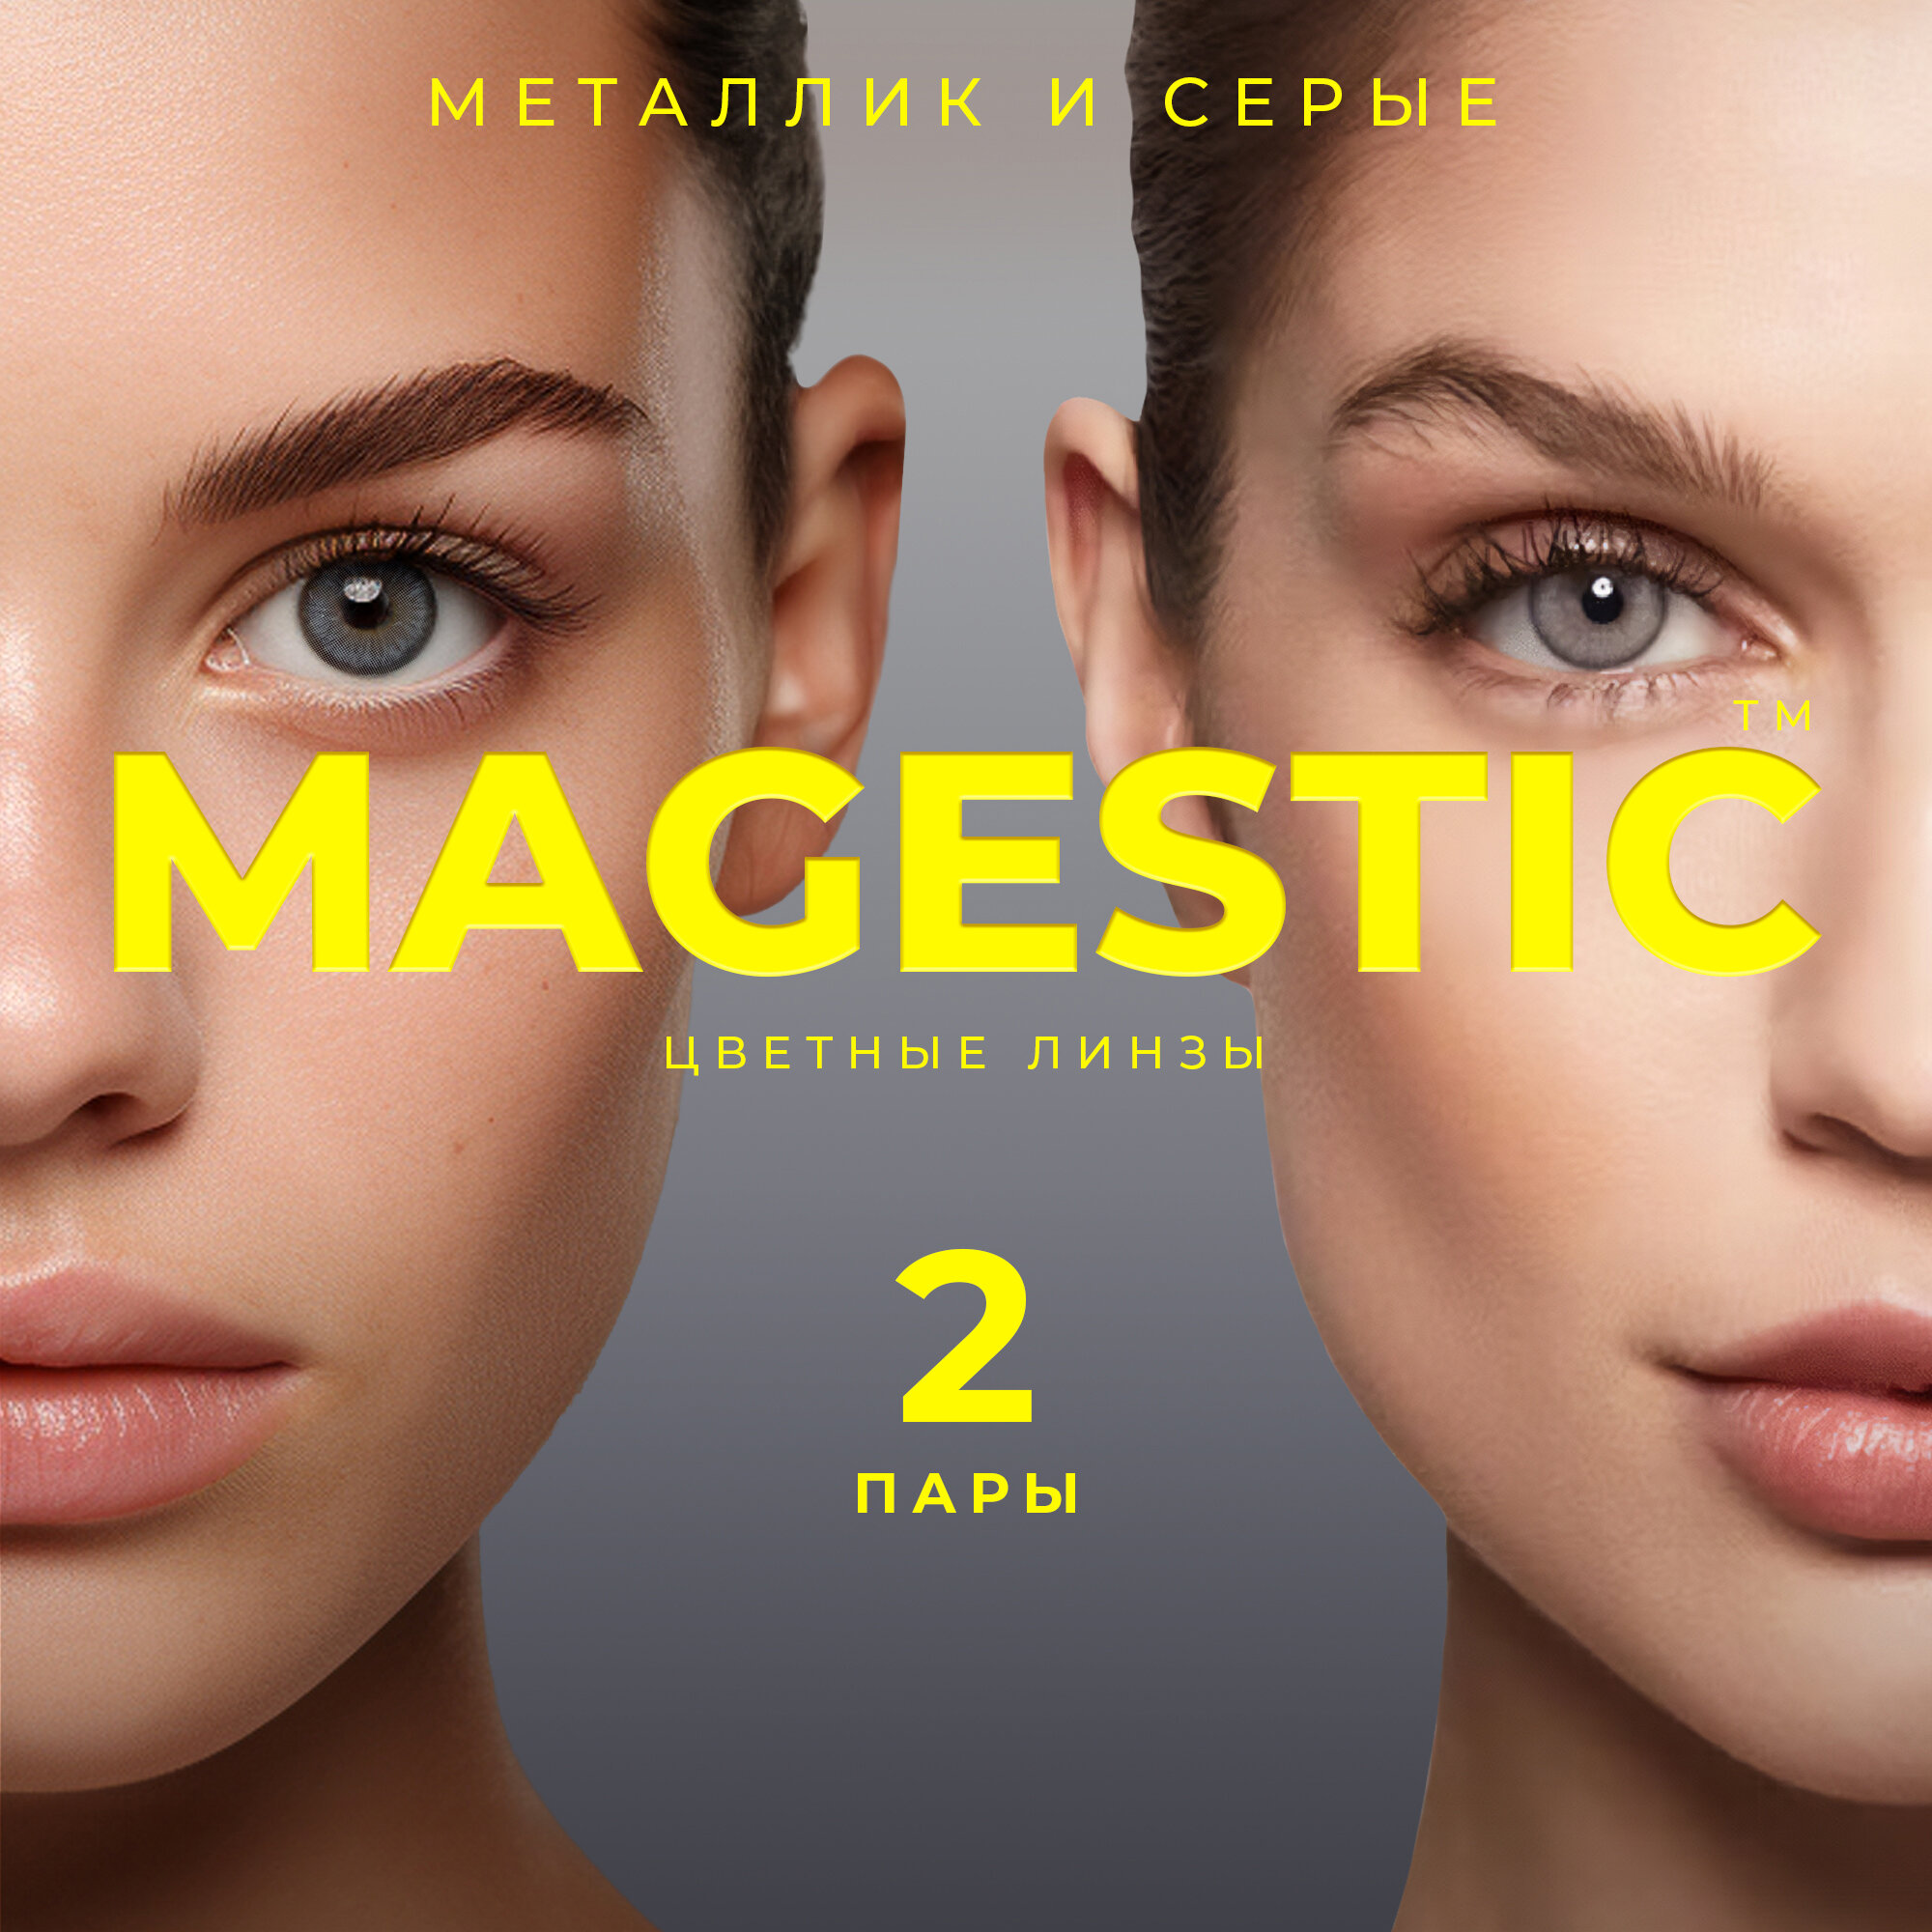 Цветные металлик + серые контактные линзы для глаз MAGESTIC 2 пары, 12 месяцев, 0.00, кривизна 8,6 мм